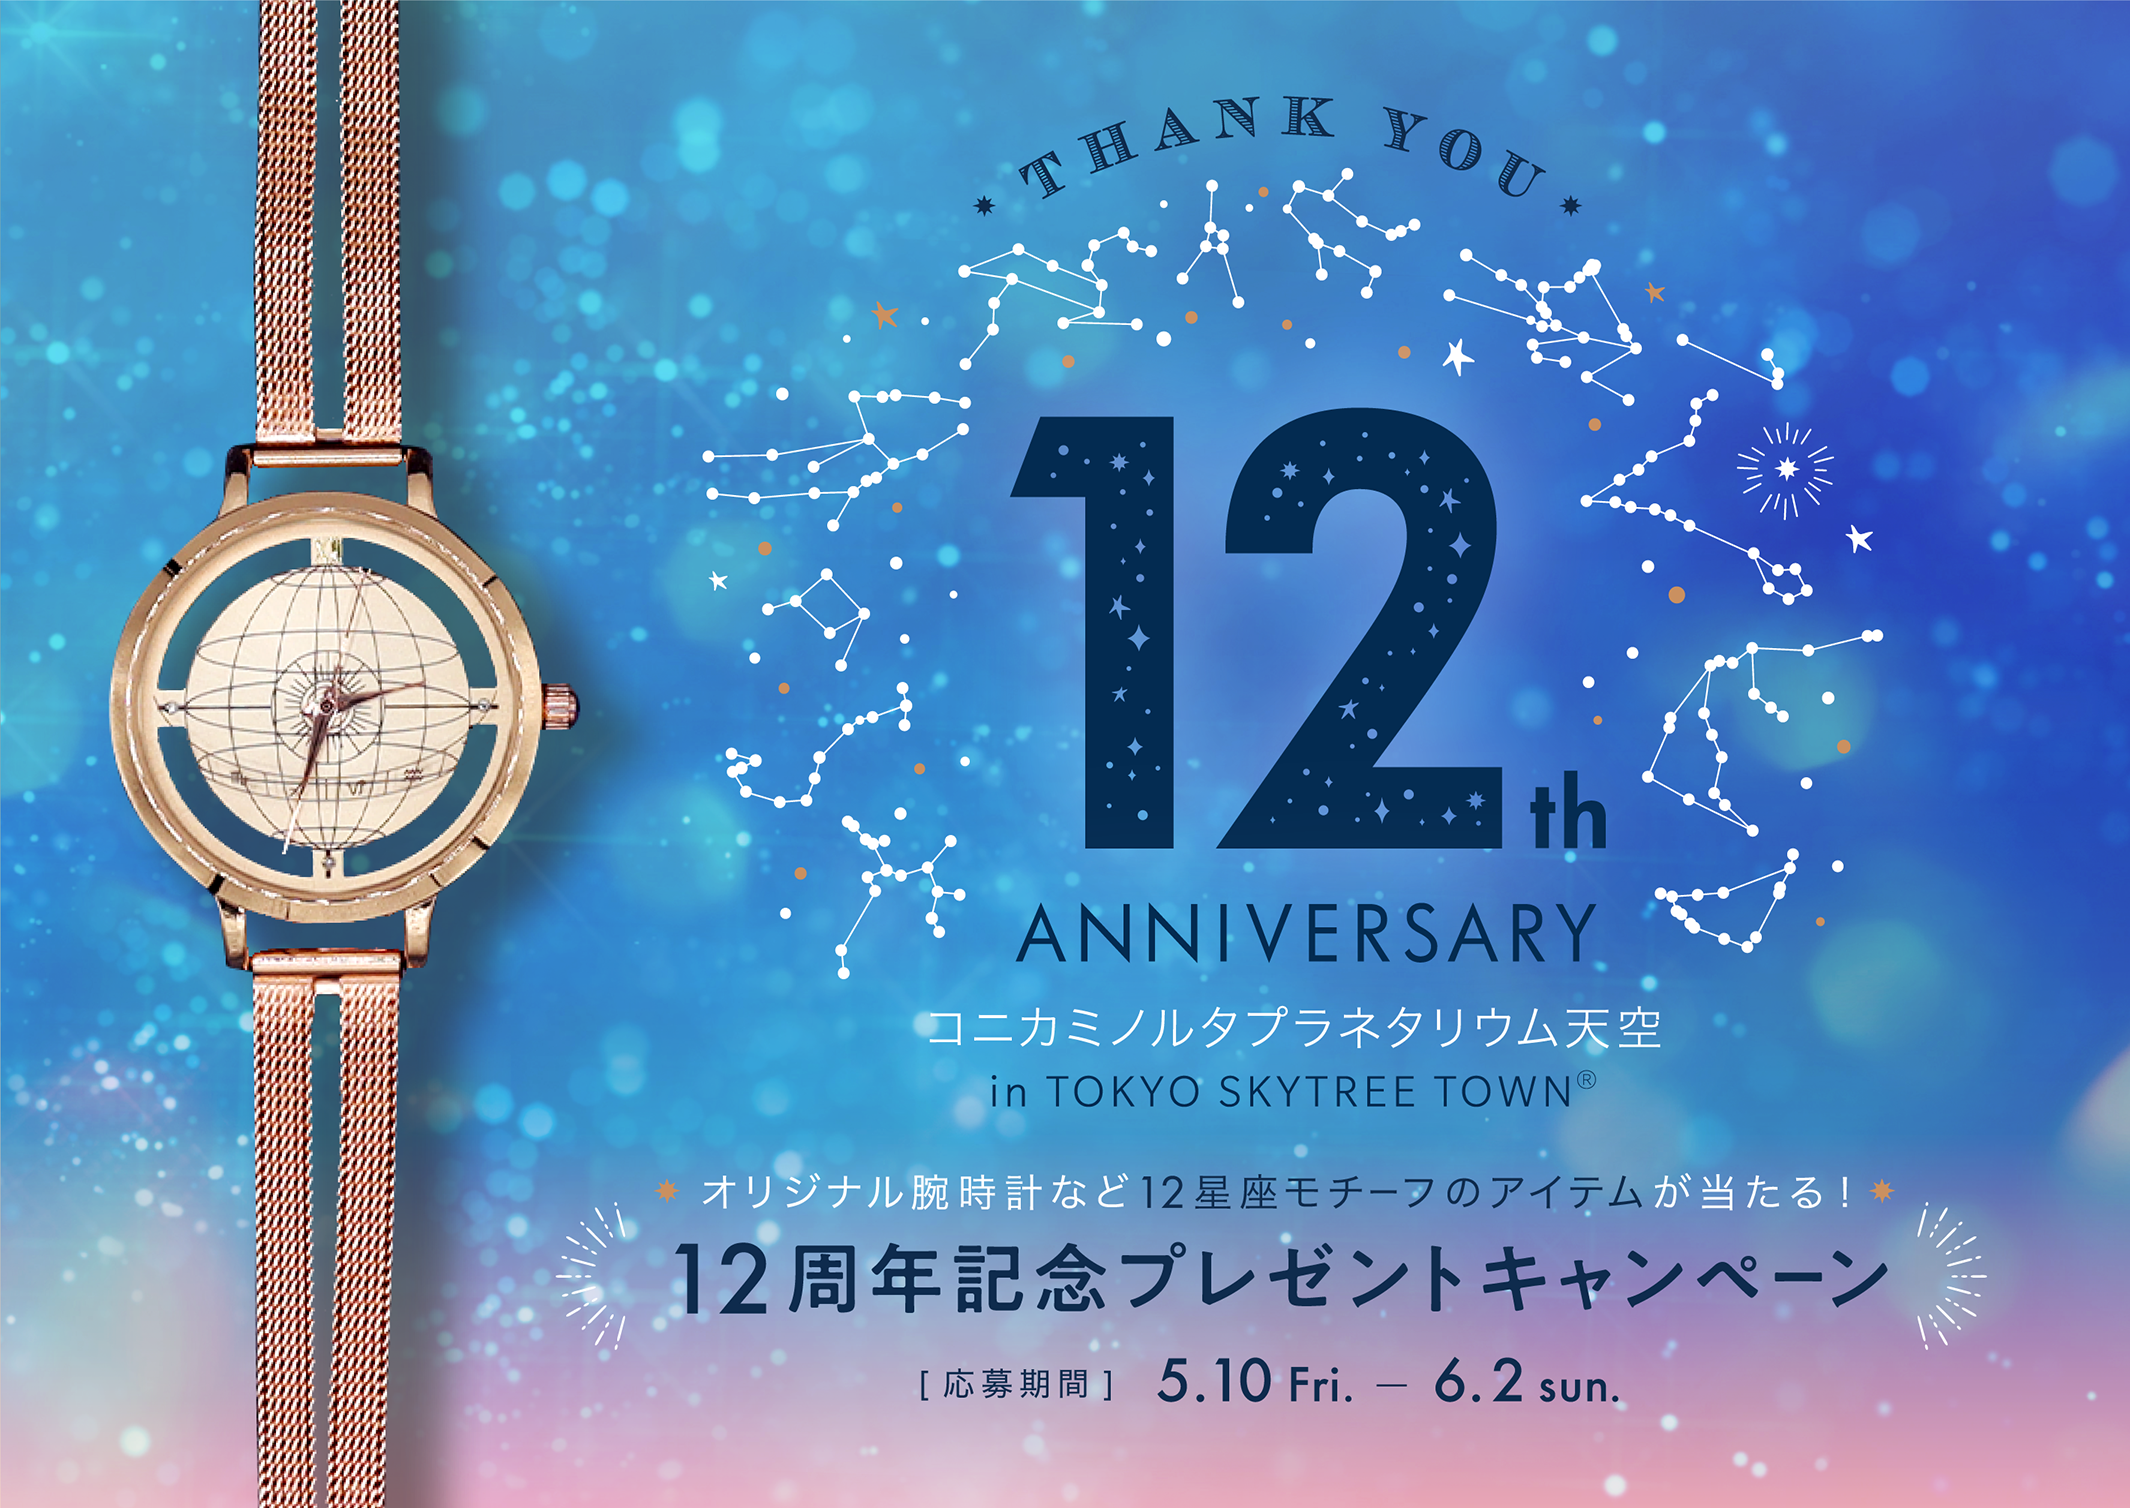 プラネタリウム天空12周年記念
オリジナル腕時計など12星座モチーフの
アイテム詰め合わせ「12星座のパレードセット」
プレゼント！